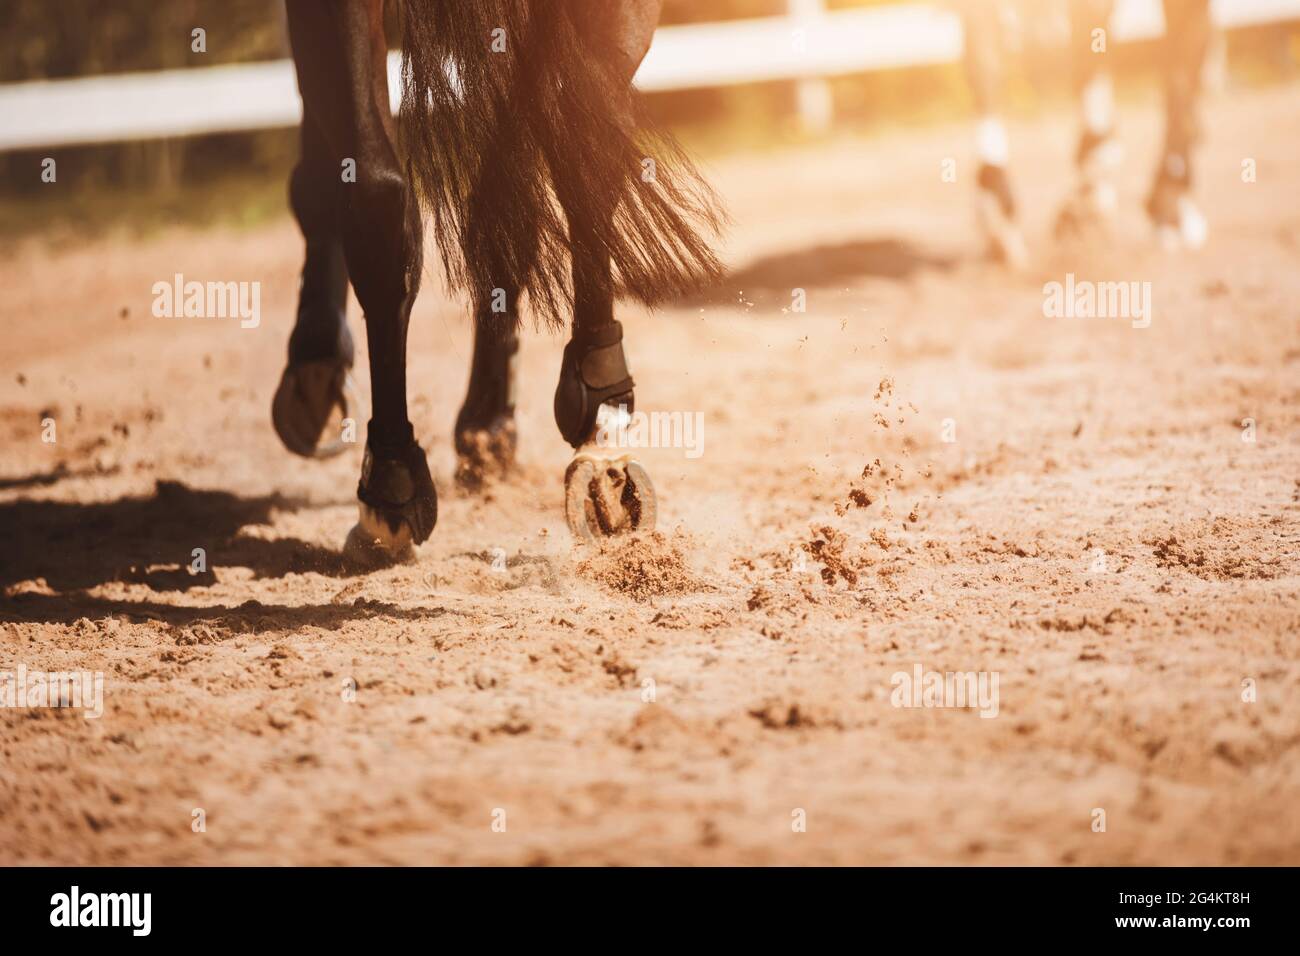 Ein dunkles Lorbeerpferd galoppiert durch die Außenarena, seine schurrenden Hufe betreten den Sand. Reitsport. Stockfoto